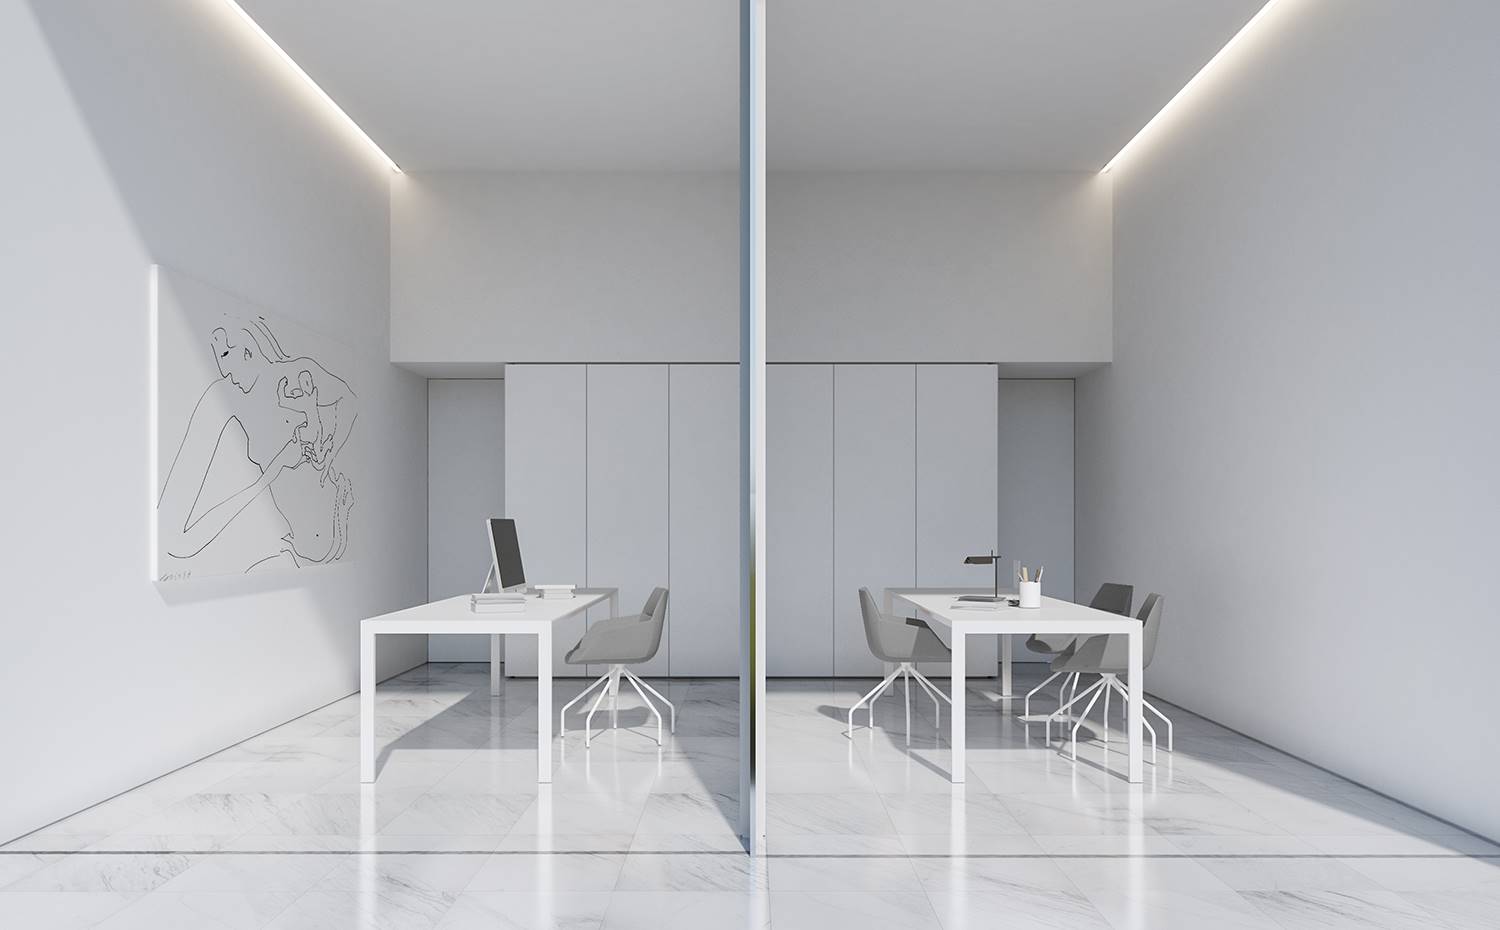 Zona de trabajo con dos mesas en paralelo, todo blanco, sillas grises. Allí donde convergen los dos volúmenes que dan forma a la vivienda se sitúa la zona de trabajo, equipada con piezas etéreas y neutras.